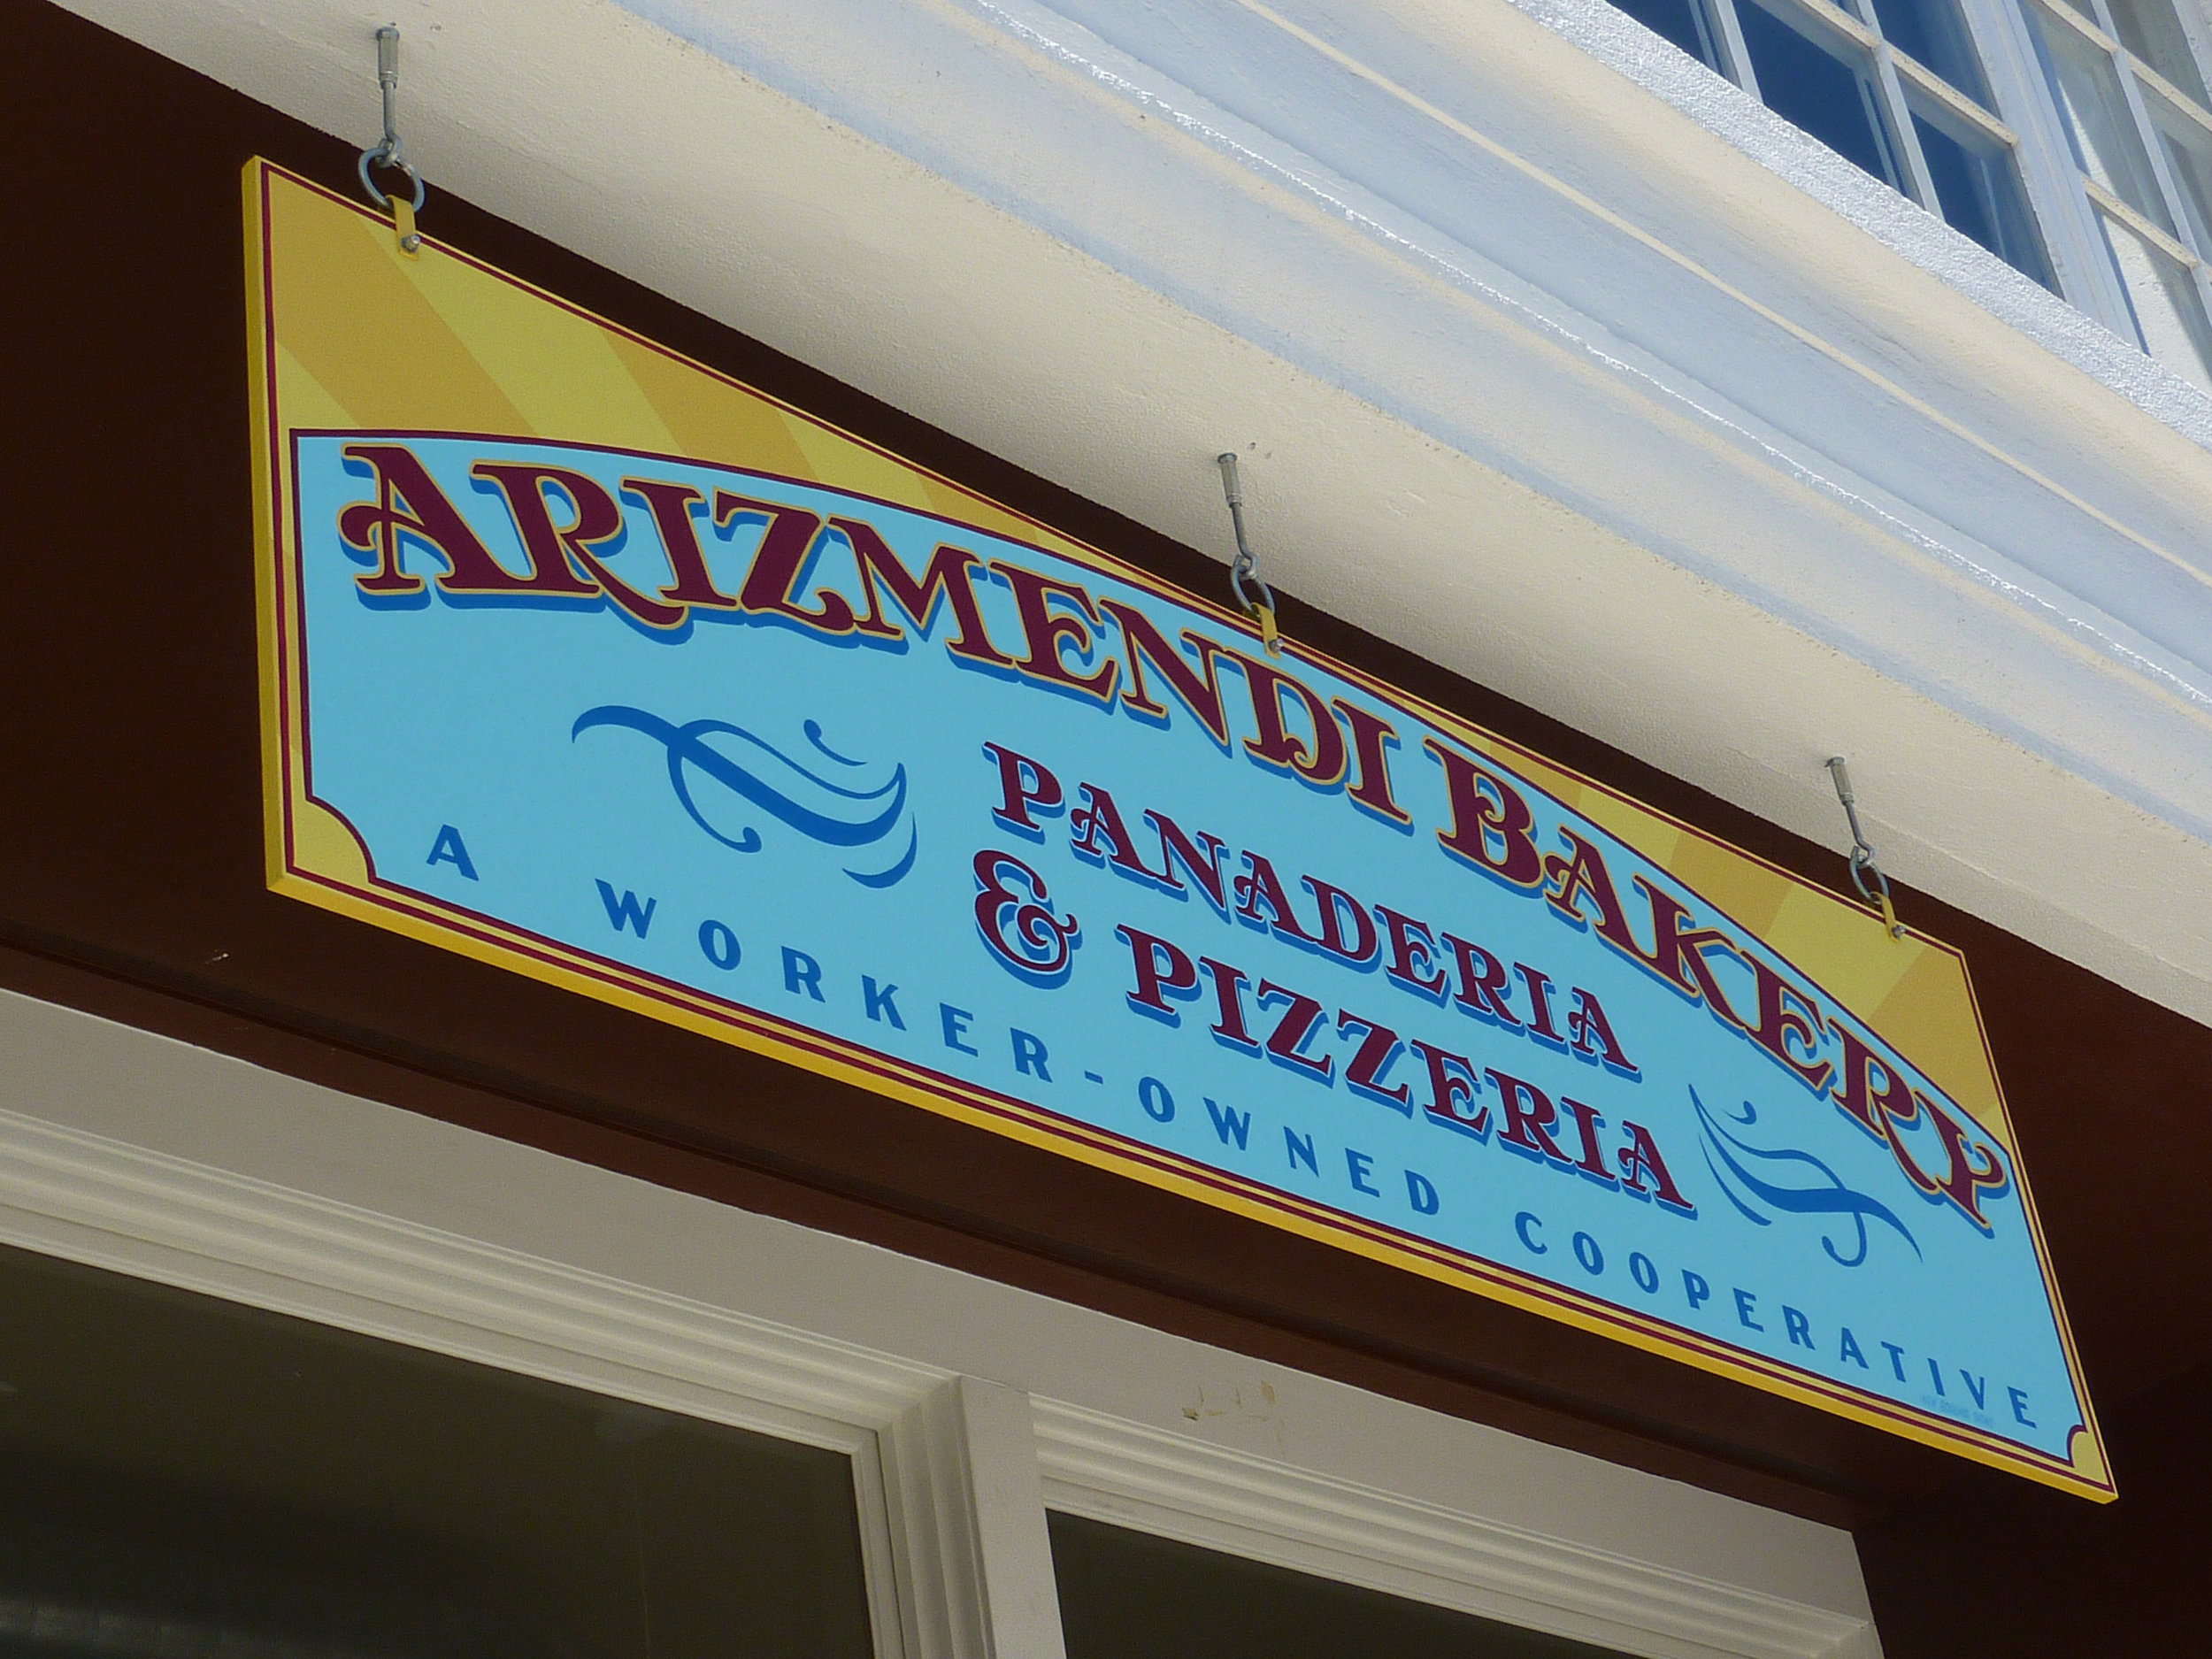 HAND-arizmendi-bakery-sign_6057428678_o.jpg